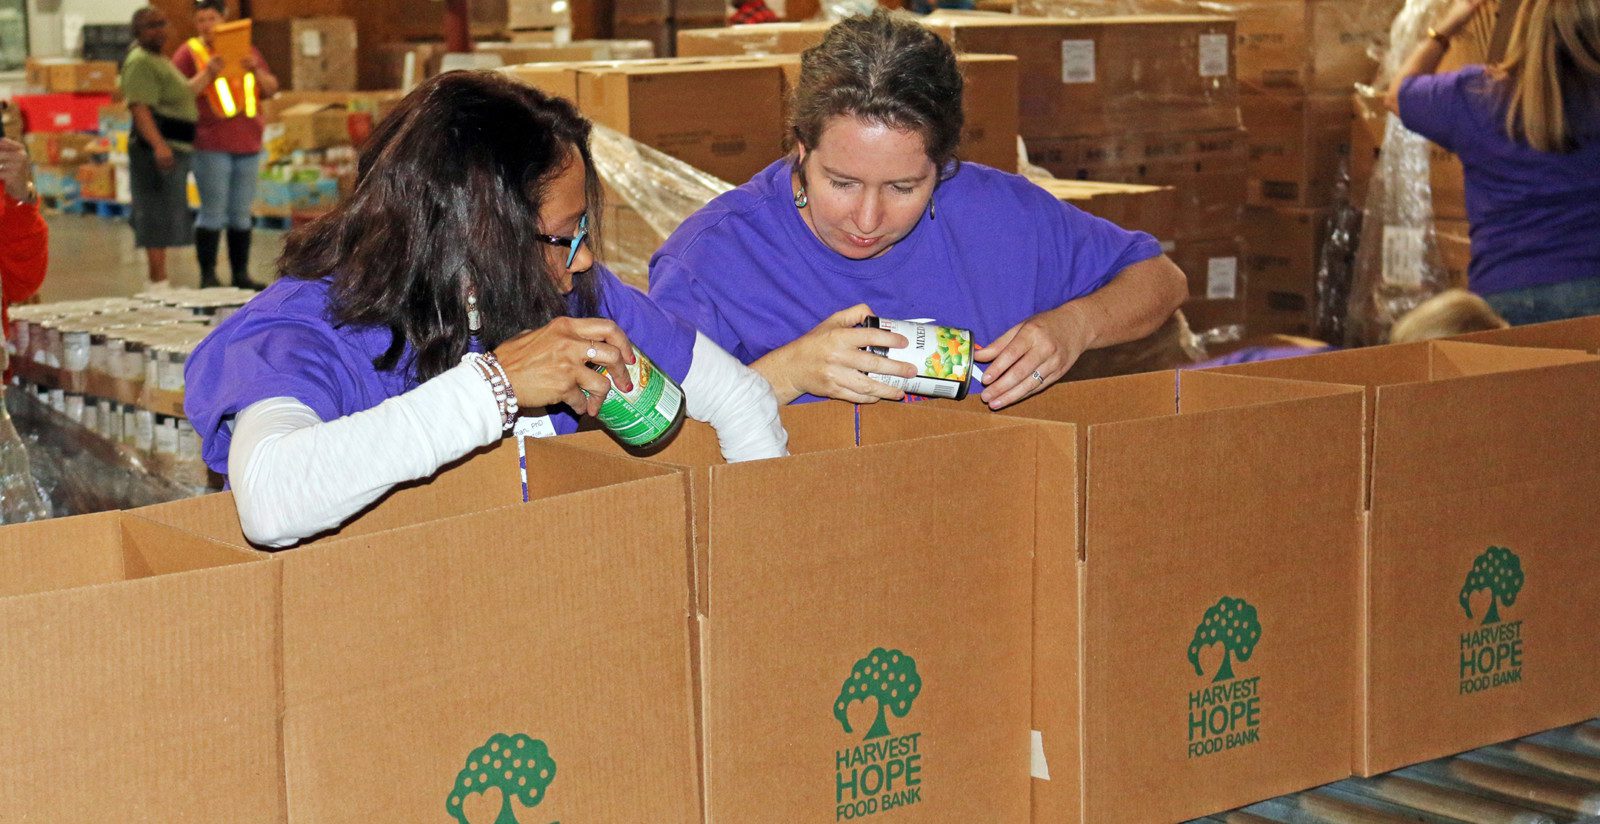 Tarana Khan and Kim Morganello load boxes at Harvest Hope Food Pantry.